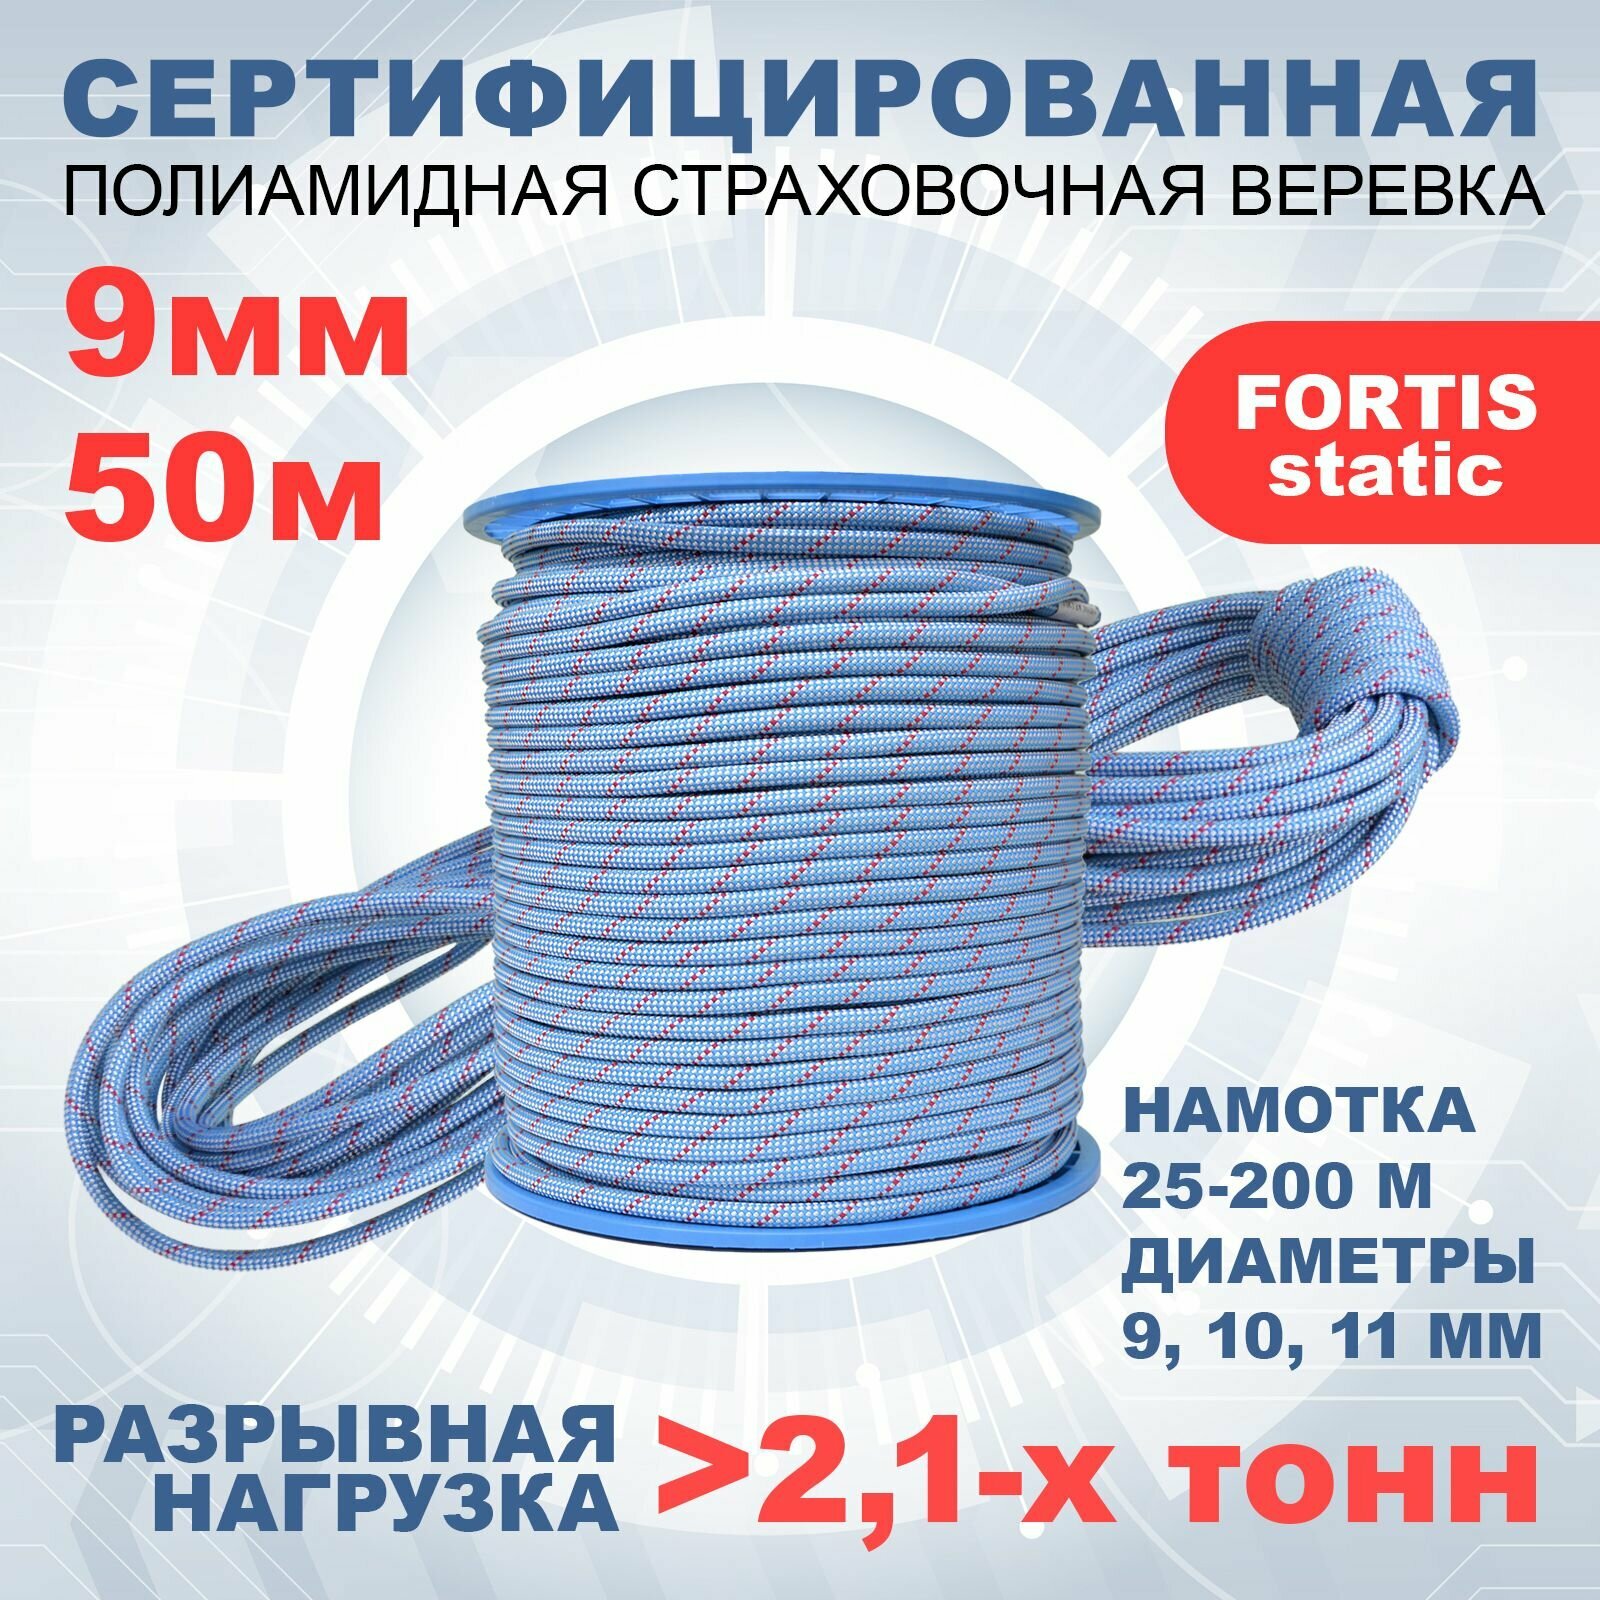 Статическая высокопрочная веревка Fortis Static, 9 мм, тип Б, 50 м, арт.462299